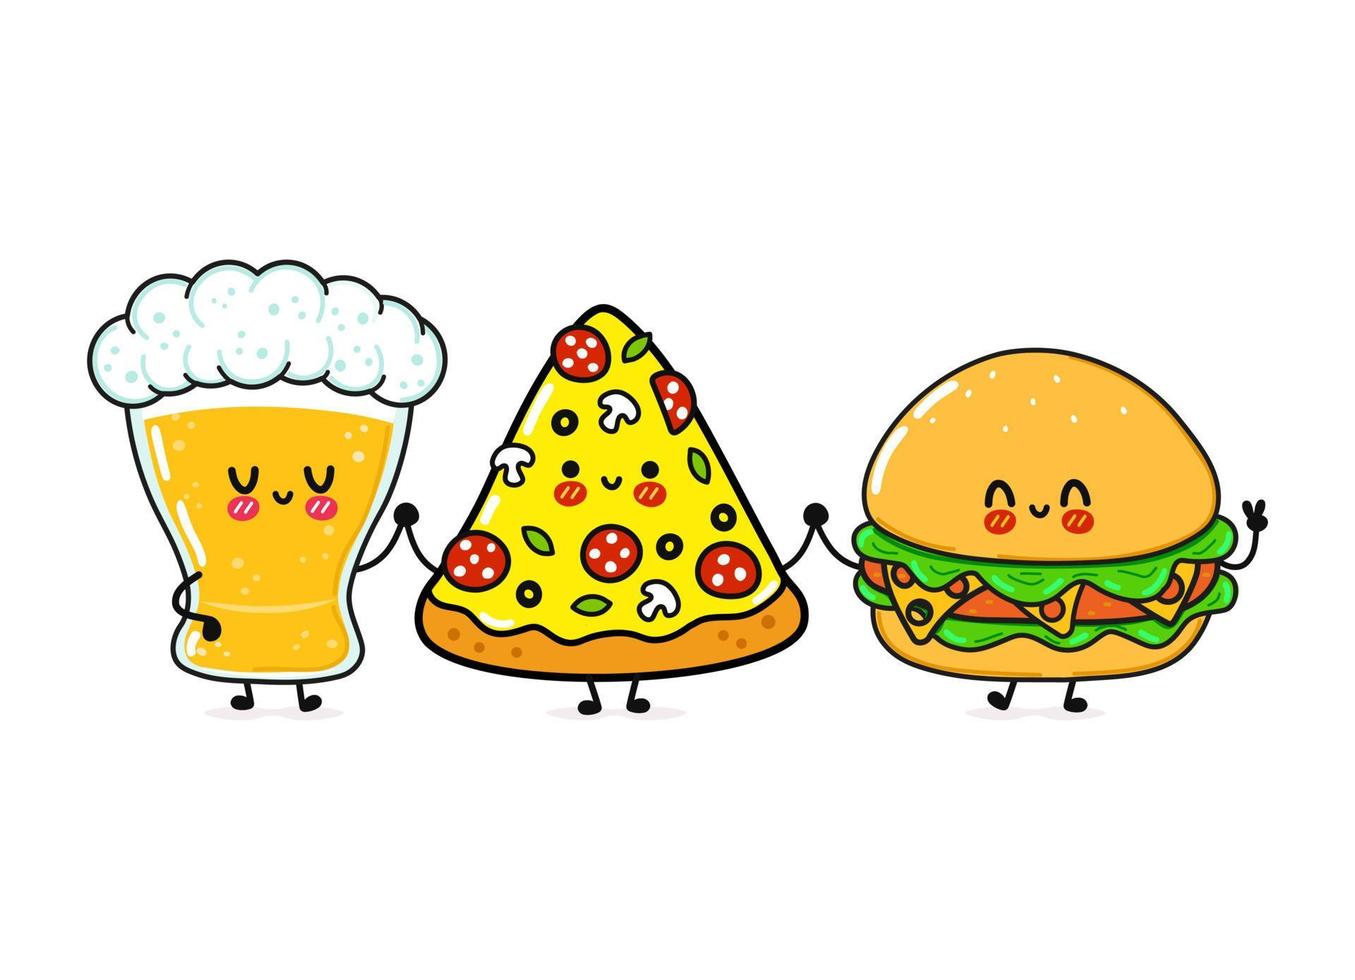 süßes, lustiges fröhliches glas bier, pizza und hamburger. Vektor handgezeichnete kawaii Zeichentrickfiguren, Illustrationssymbol. Lustiges Cartoon-Glas Bier, Pizza und Hamburger-Maskottchen-Freunde-Konzept